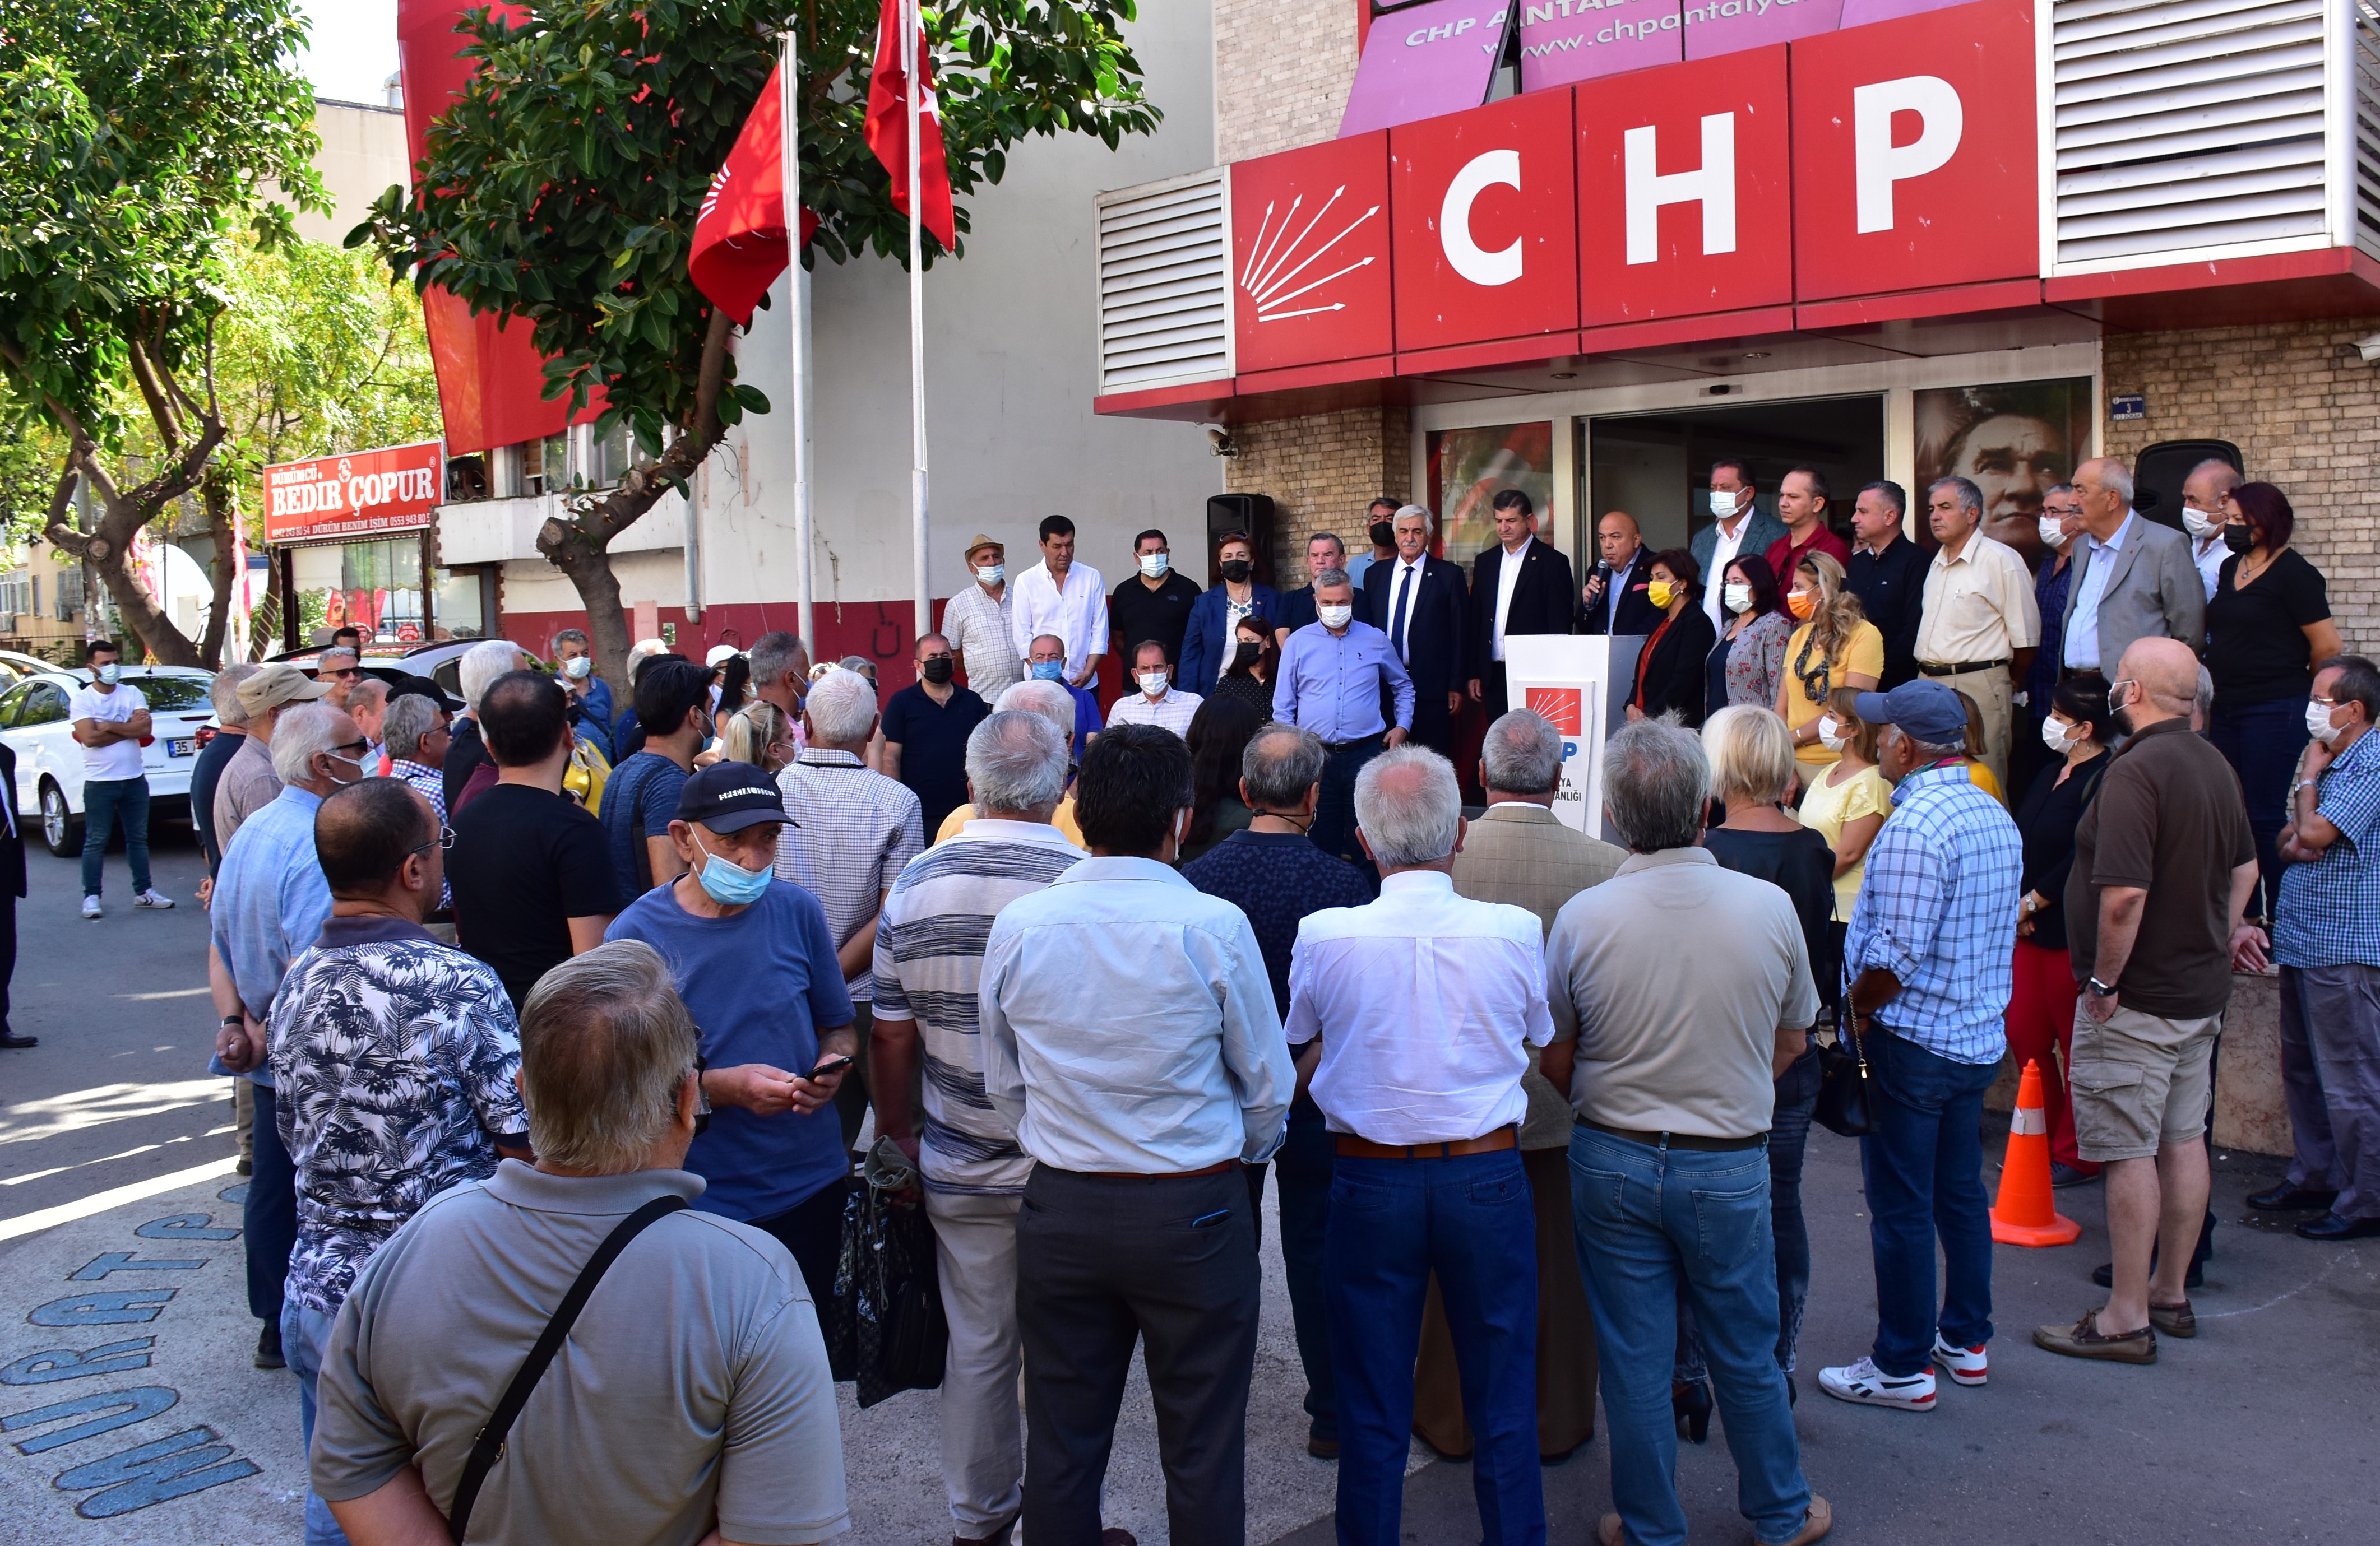 CHP Antalya İl Başkanı Nuri Cengiz “Çocuklarımızın eğitimi için hazırız, geleceğimizi karanlıktan kurtaracağız”